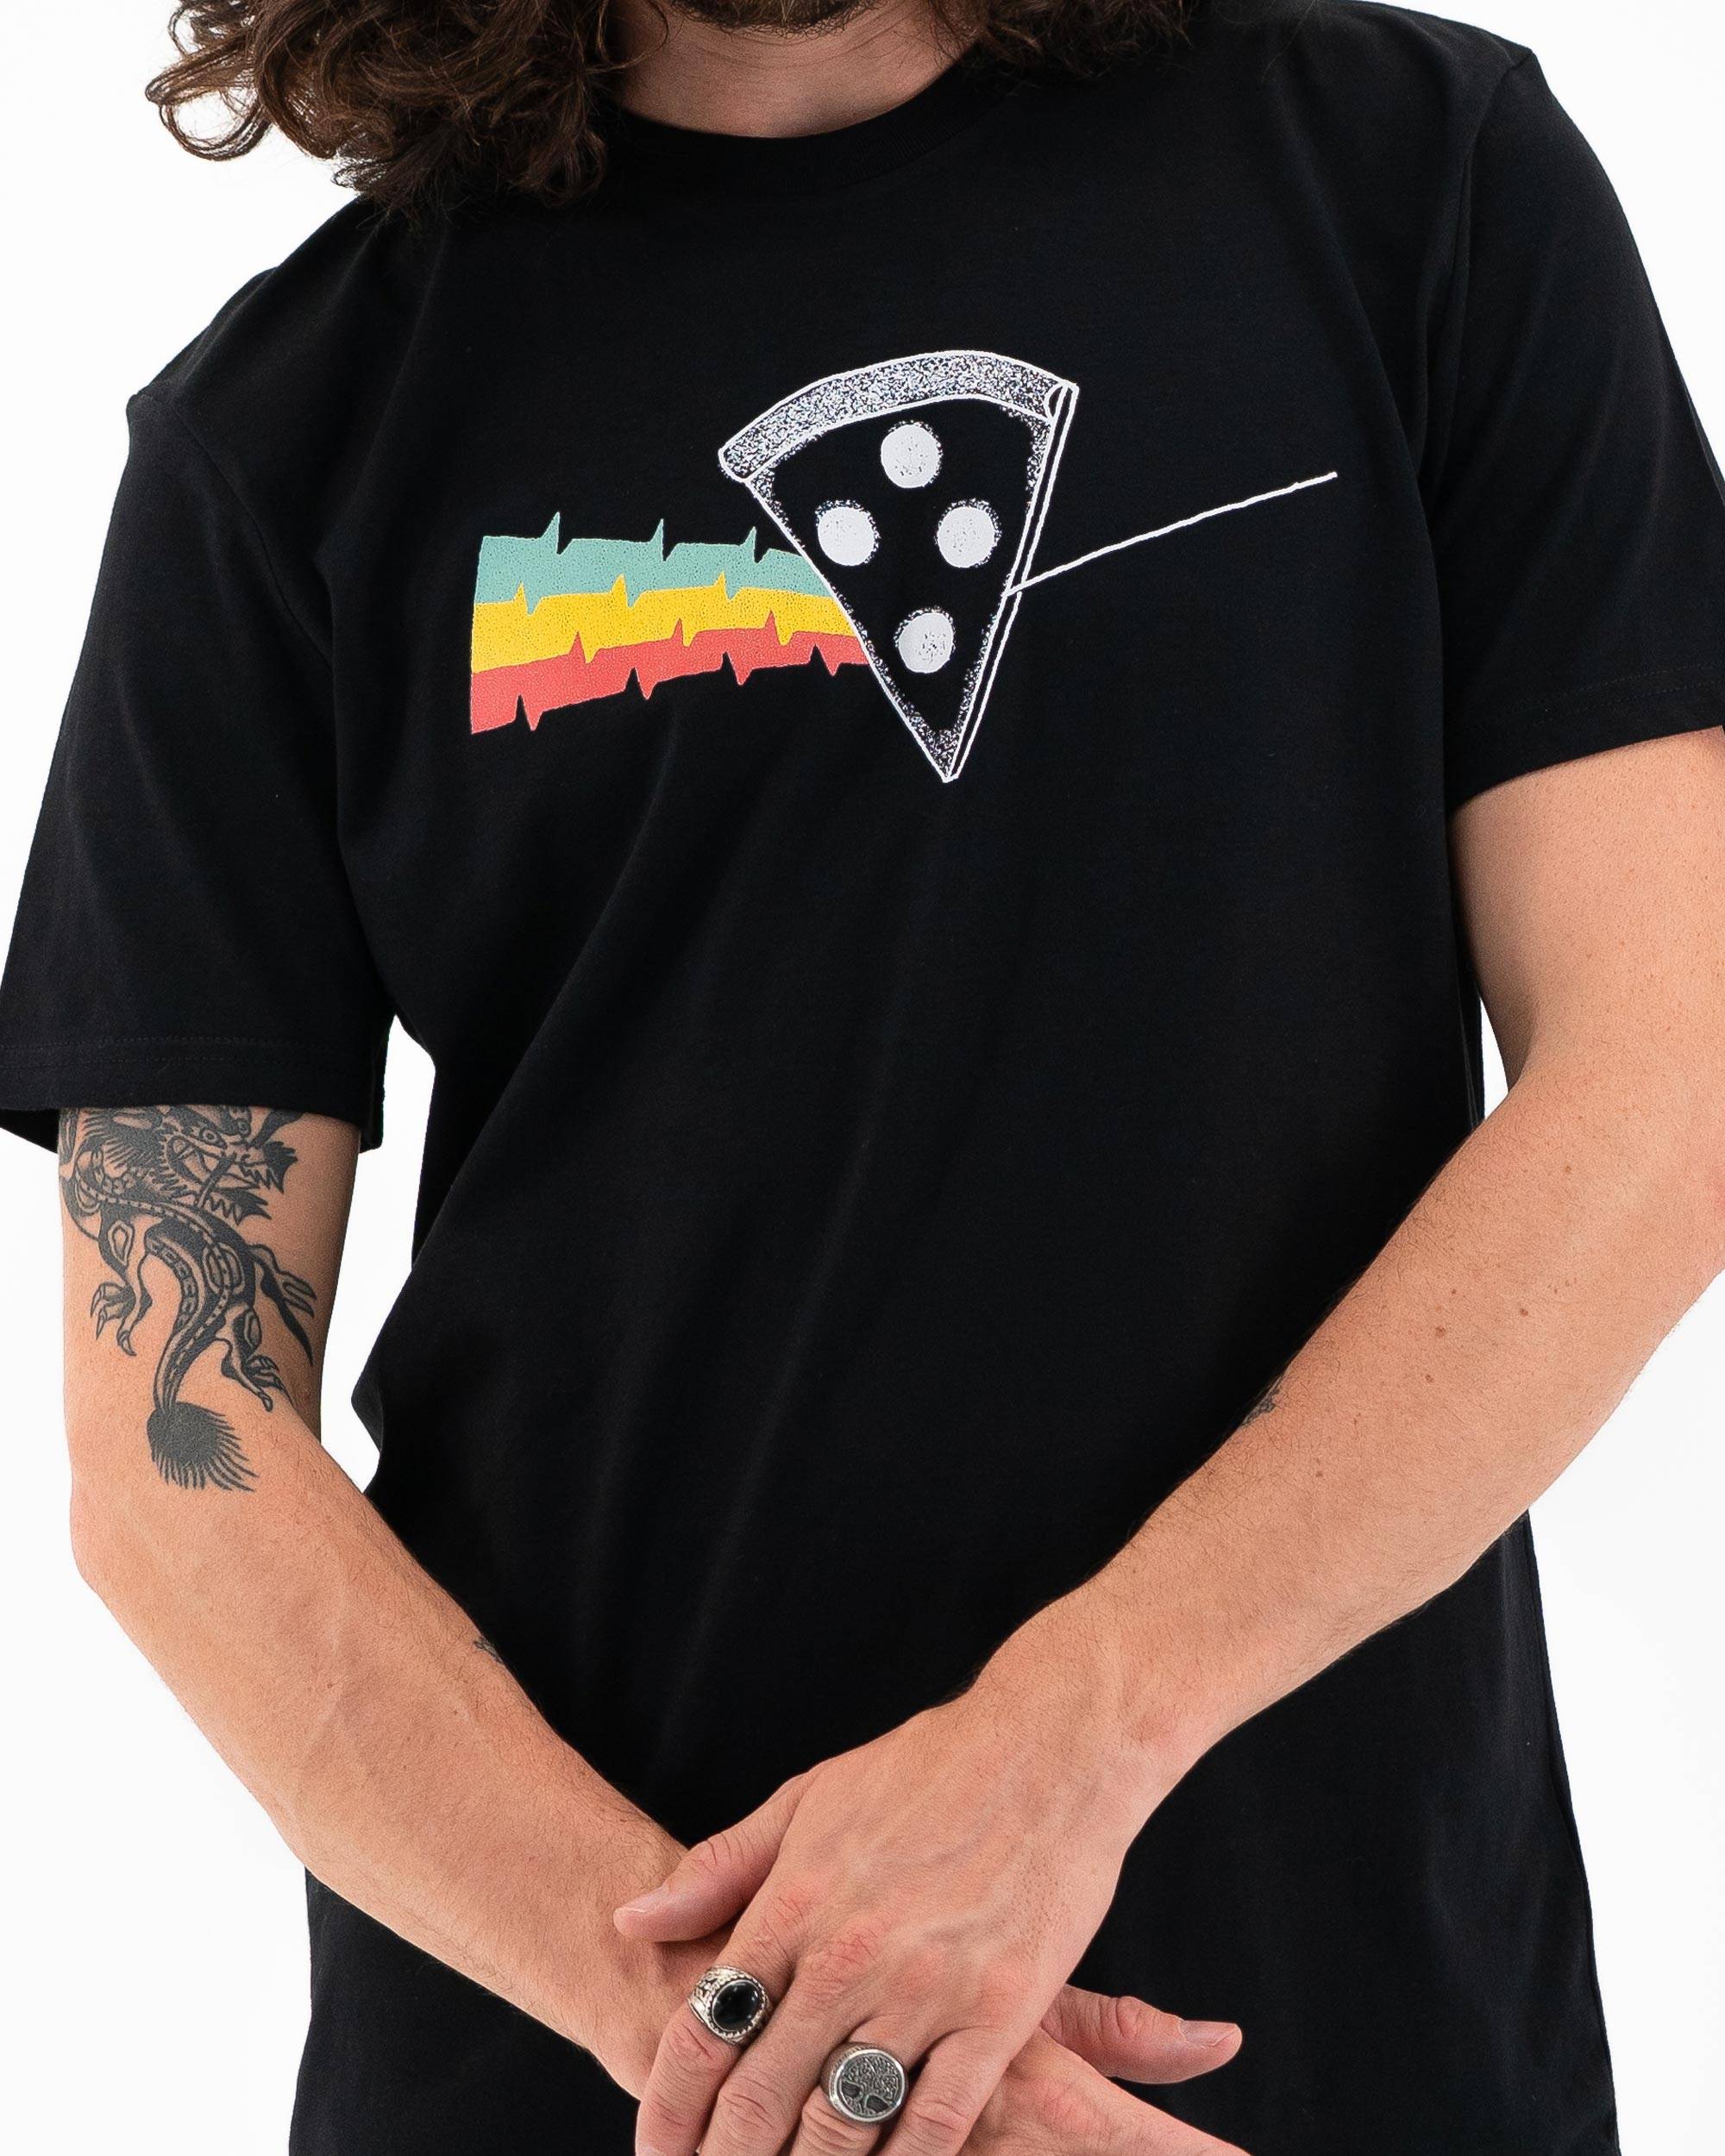 T-shirt Dark side of the pizza de couleur Noir par Skitchism